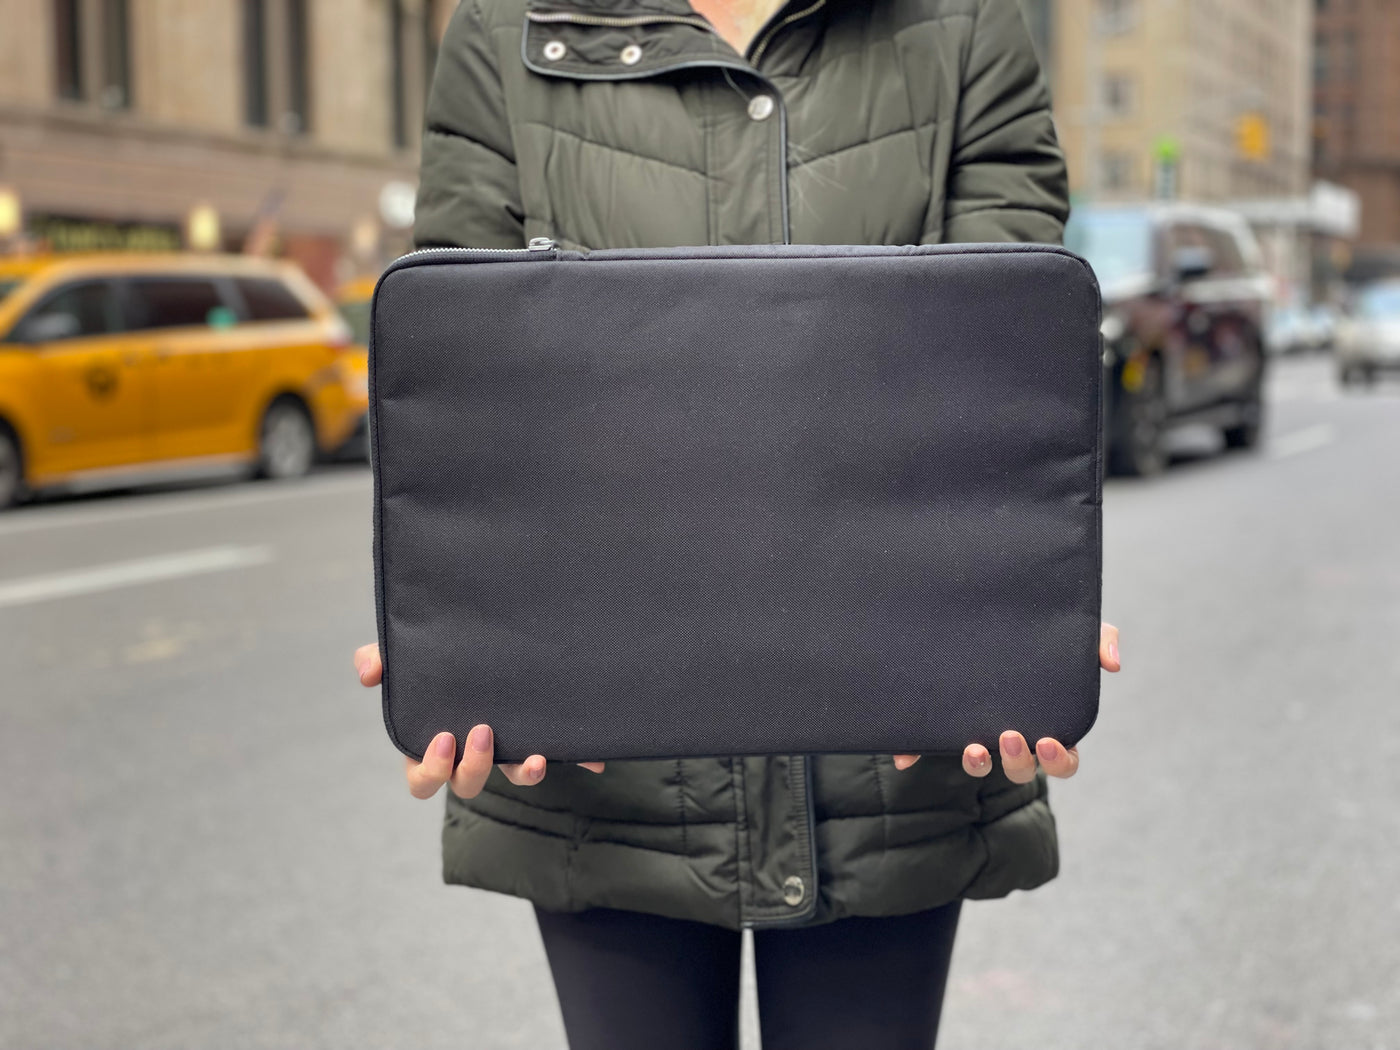 Ozpack Siyah 13 inch Orta Laptop Sırt Çantası (Gövde+Bel Çantası+Laptop Kılıfı + Yağmurluk Dahildir. GRİ Ozpack astarı.)